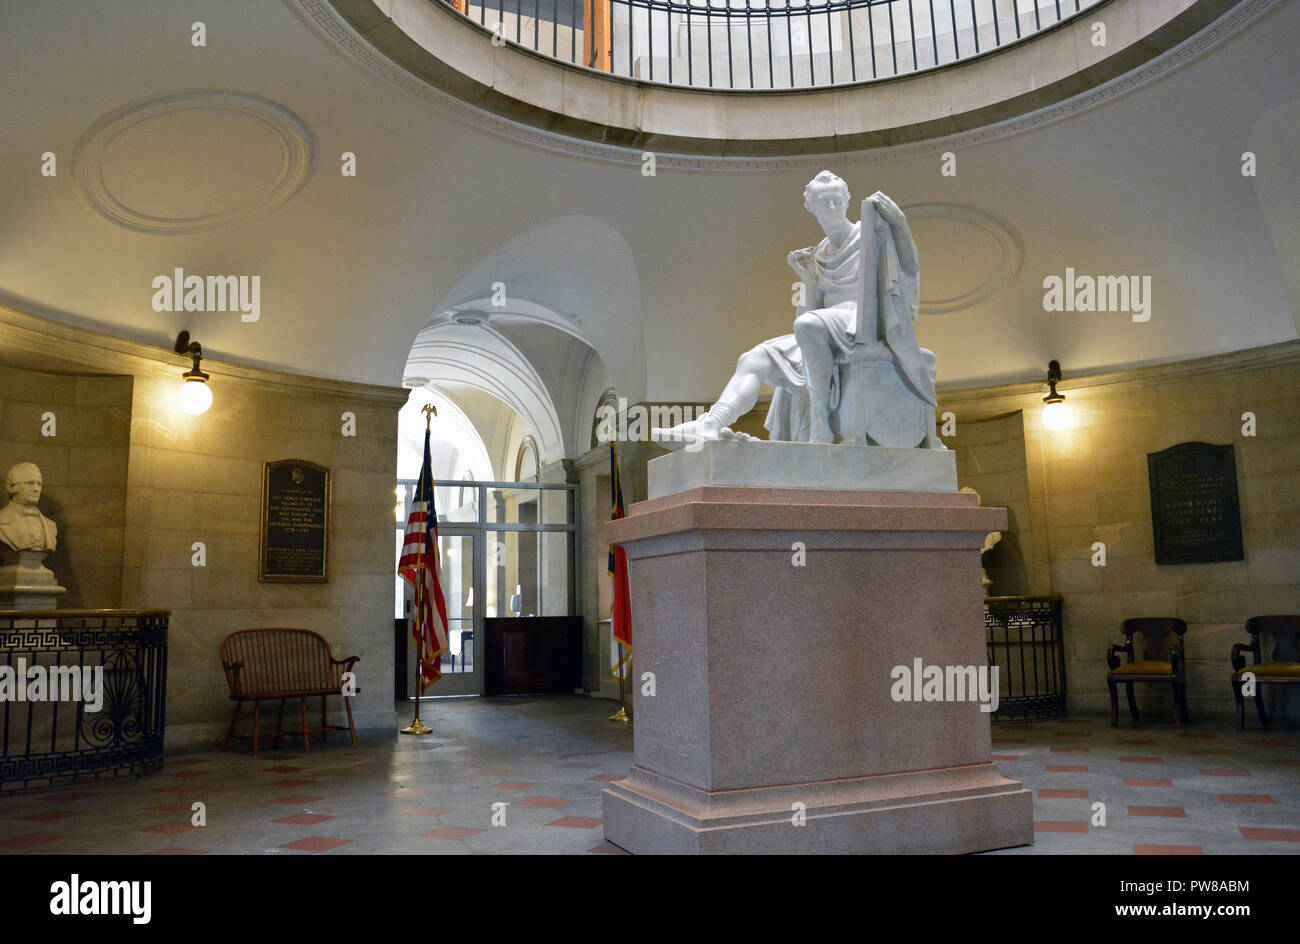 Der stark stilisierten Skulptur von Geo. Washington, wie ein römischer General, in der Rotunde des historischen North Carolina Capitol Gebäude dargestellt. Stockfoto